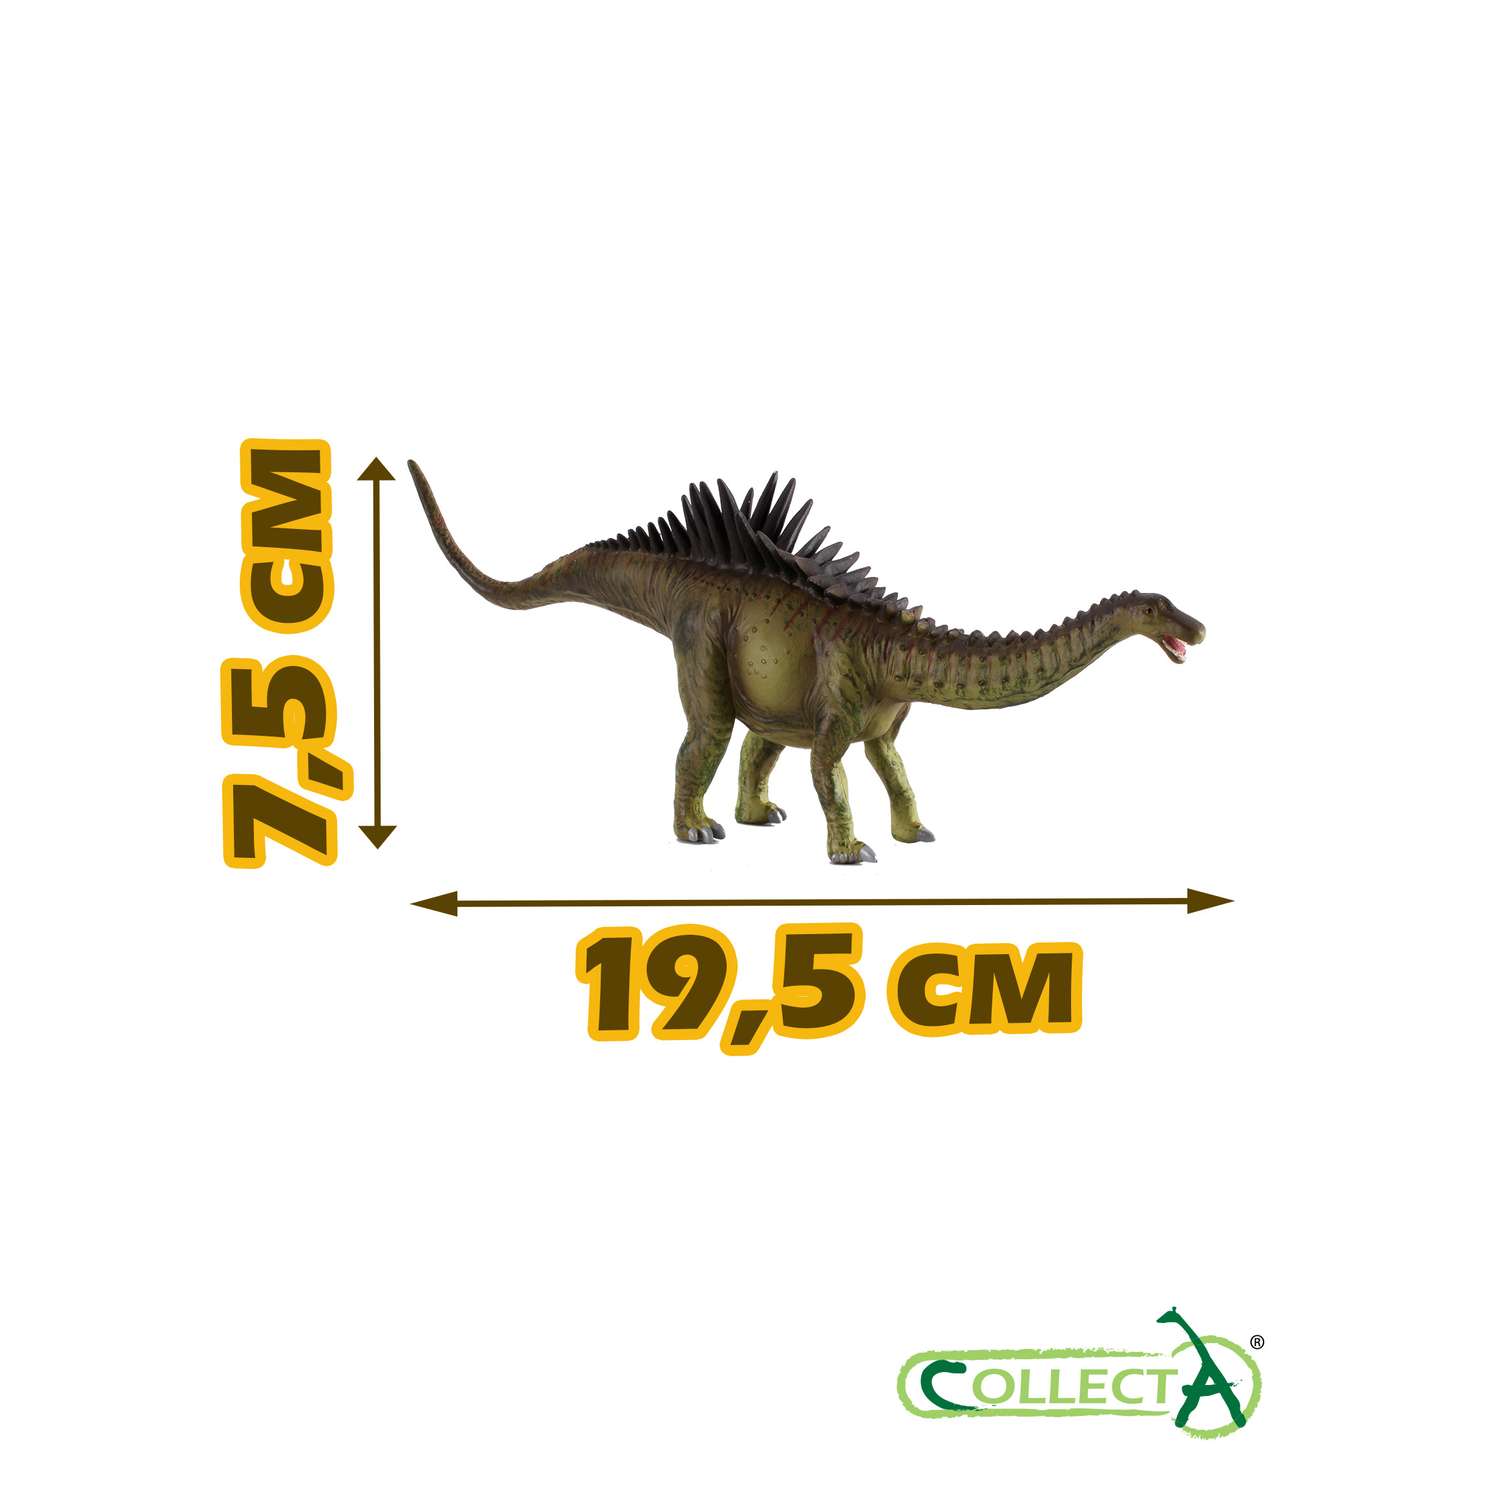 Игрушка Collecta Агустиния большая фигурка динозавра - фото 2